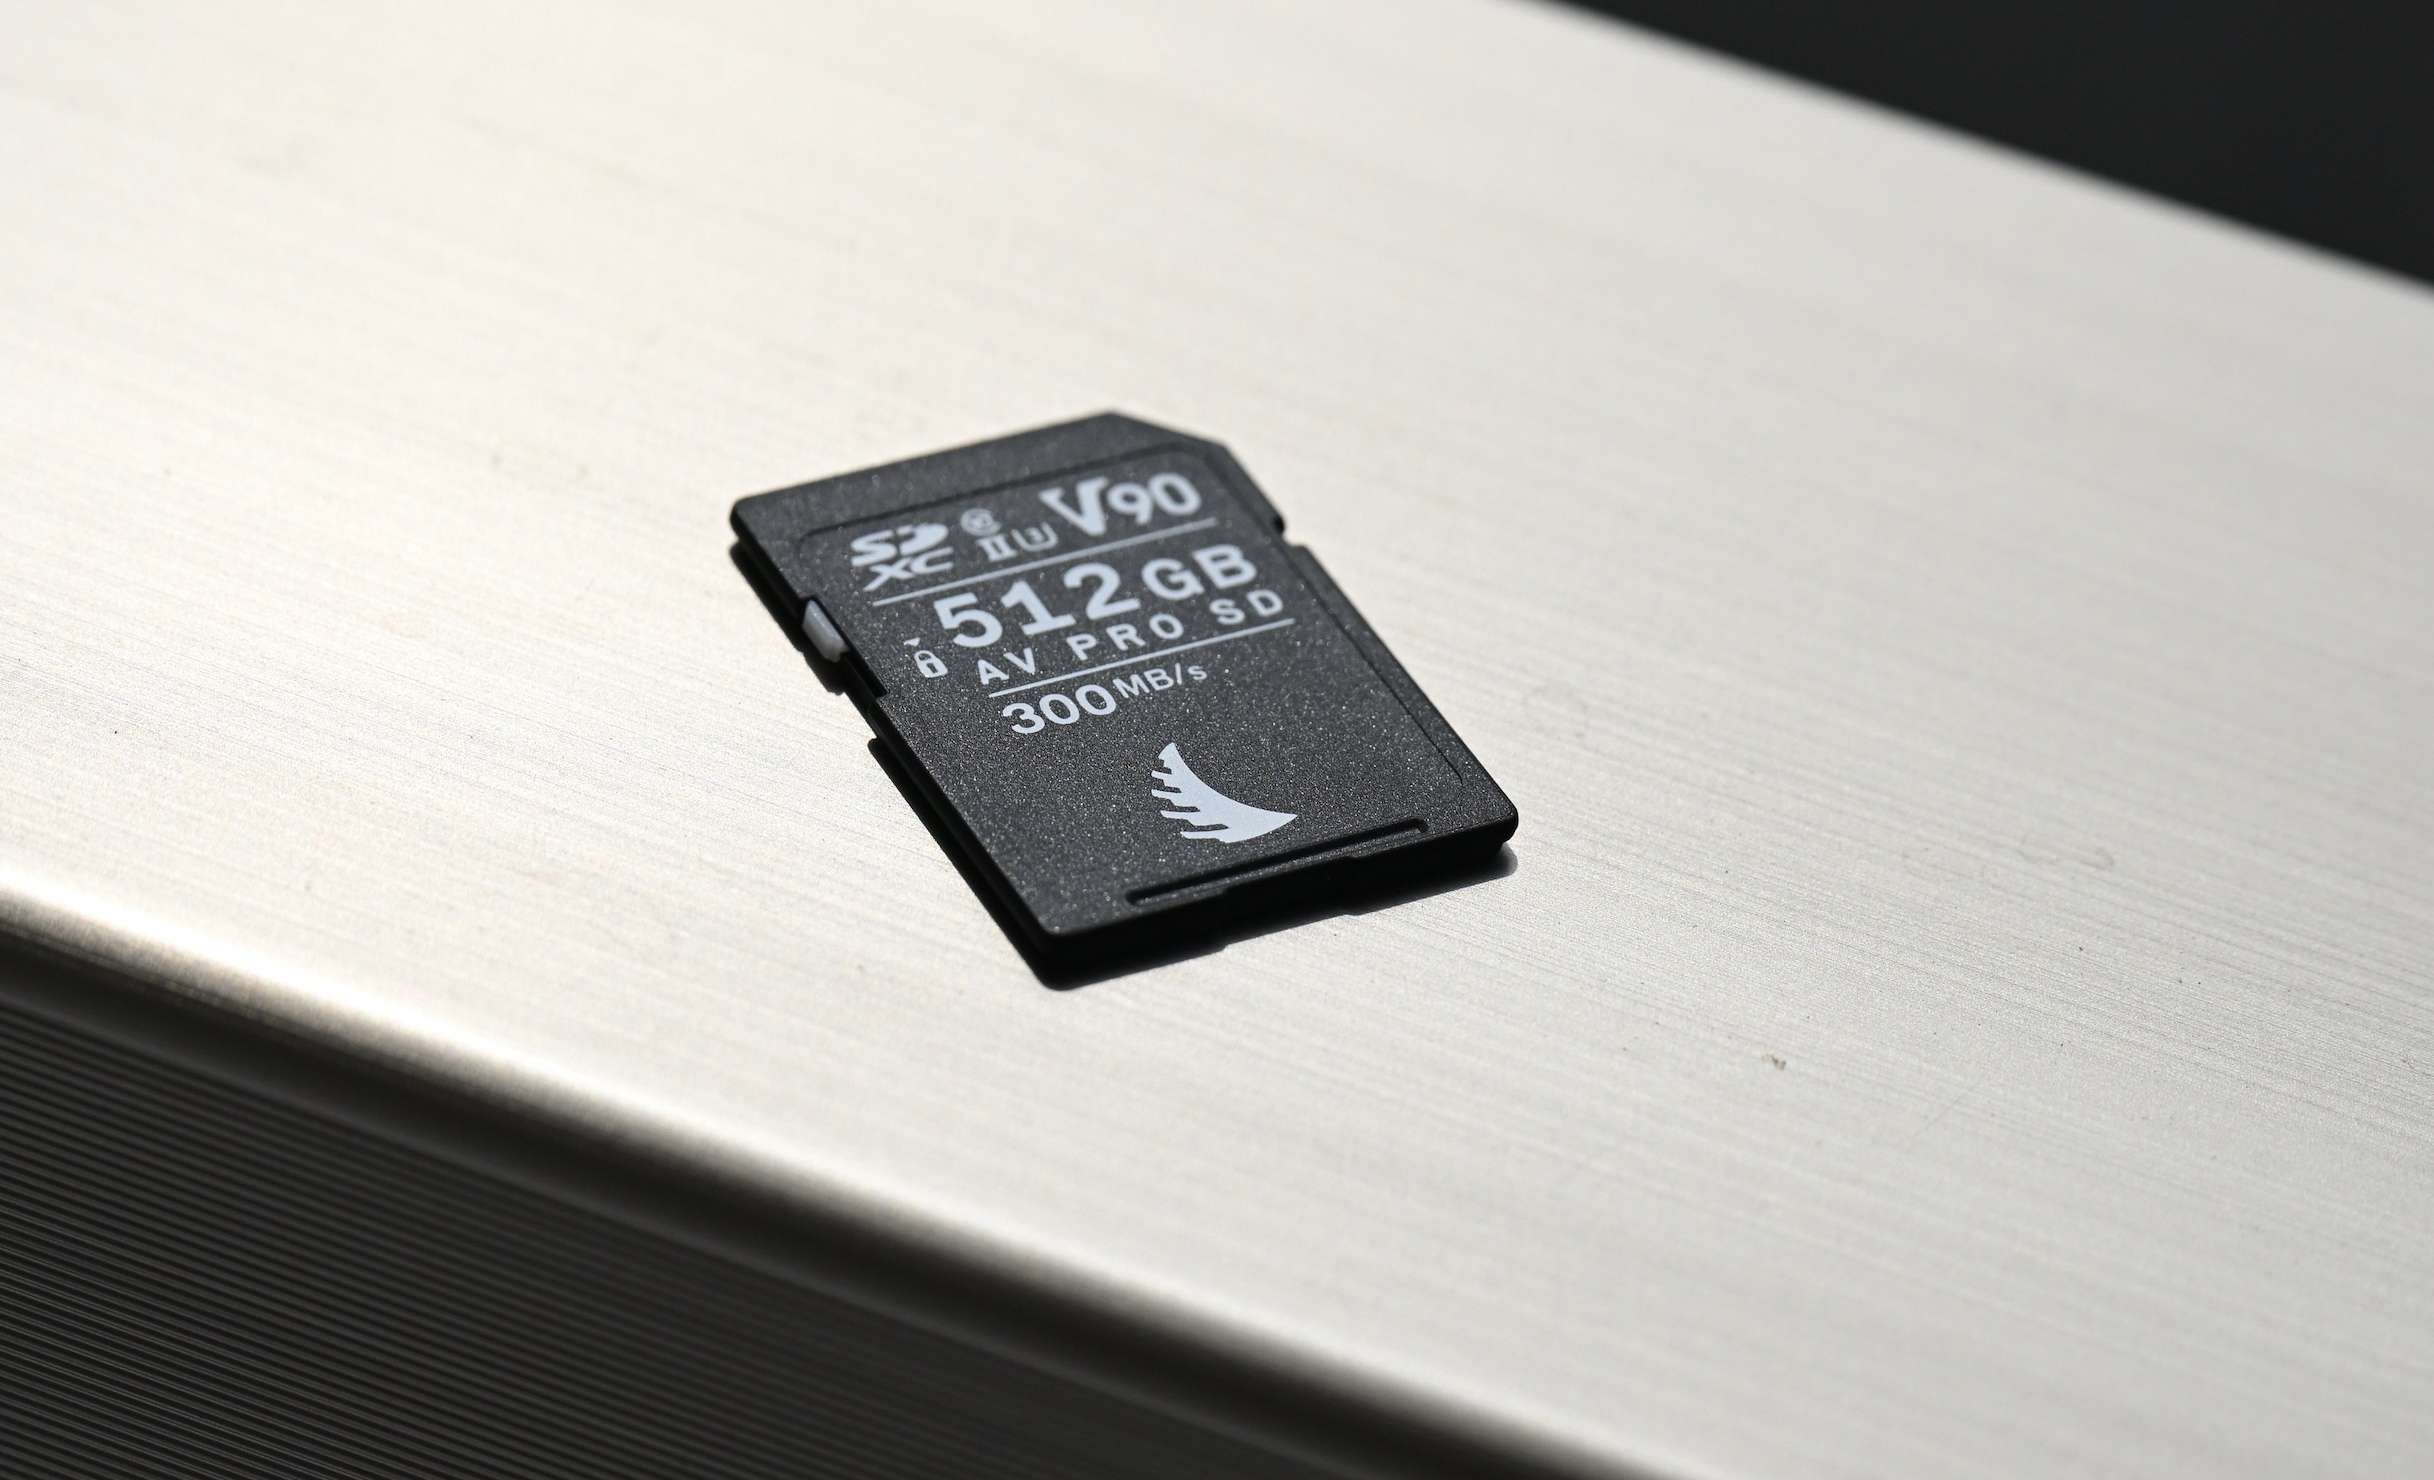 1 GB Micro SD memory card, Five Below